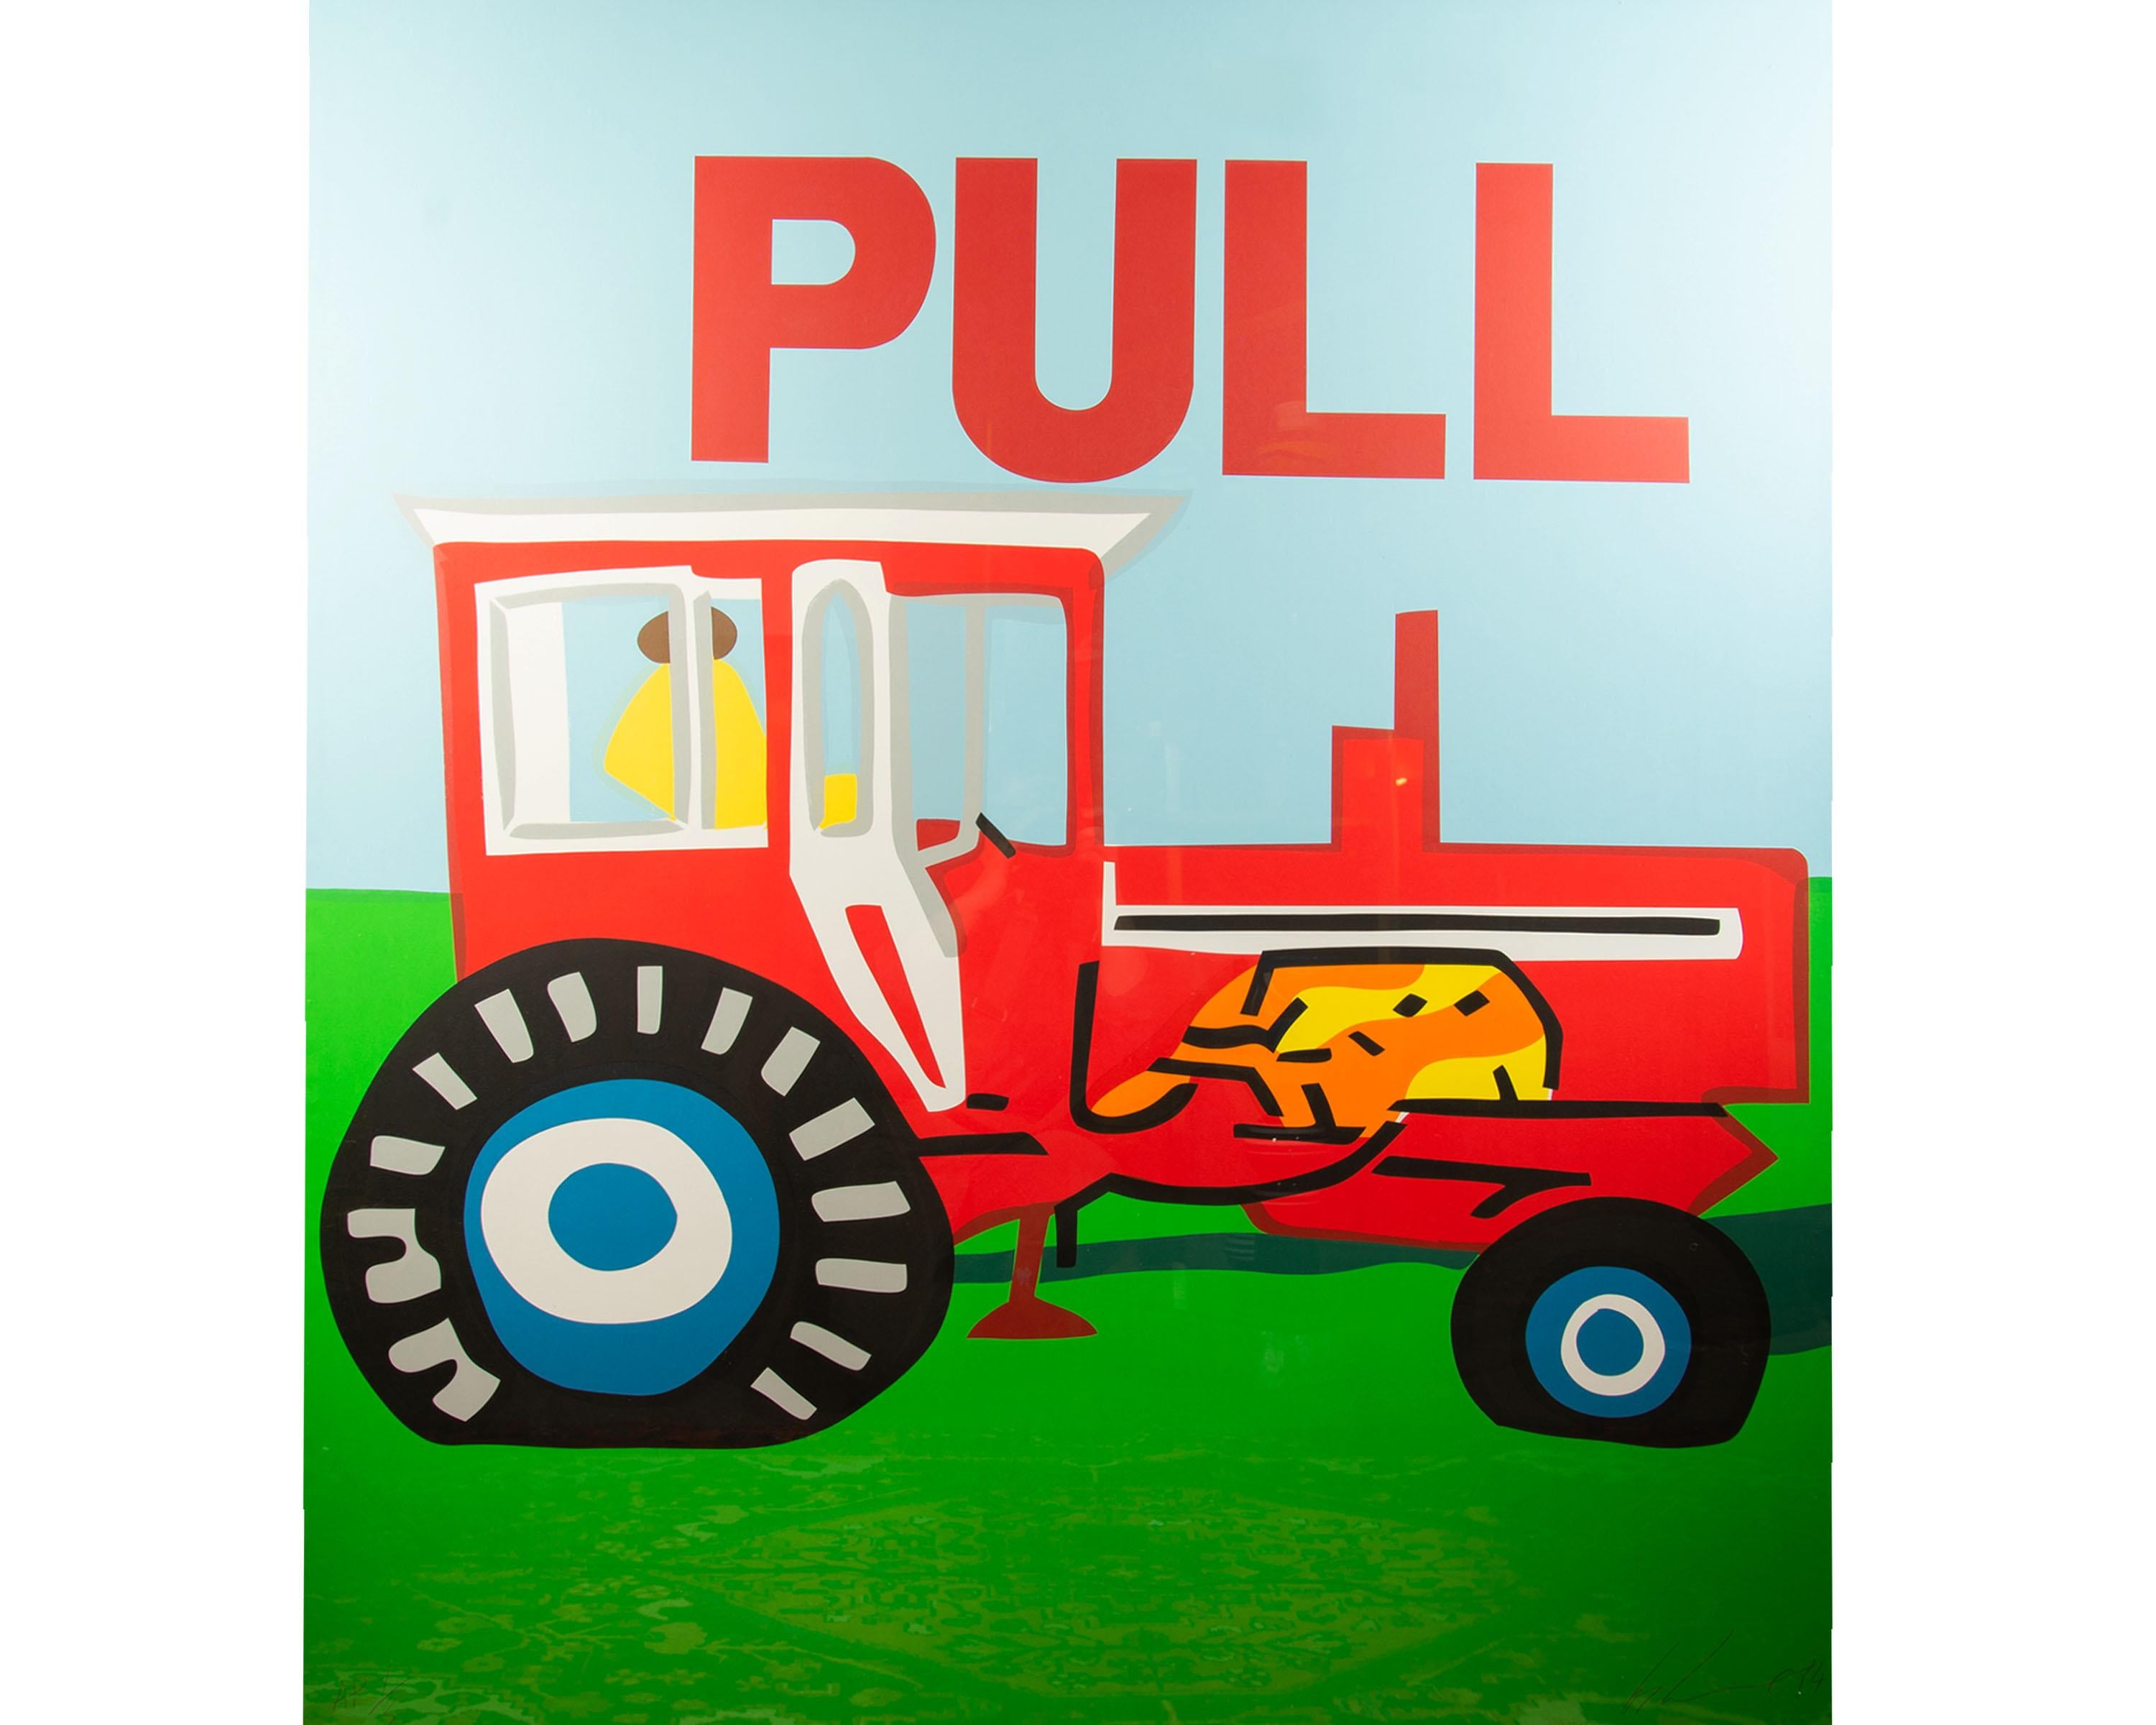 Eine Pop-Art-Serigrafie von 1984 mit dem Titel Pull, signiert von dem irisch-amerikanischen Konzeptkünstler Les Levine (geb. 1935). Die Serigraphie zeigt einen besetzten roten Tracker, der auf grünem Gras vor einem hellblauen Himmel parkt. 